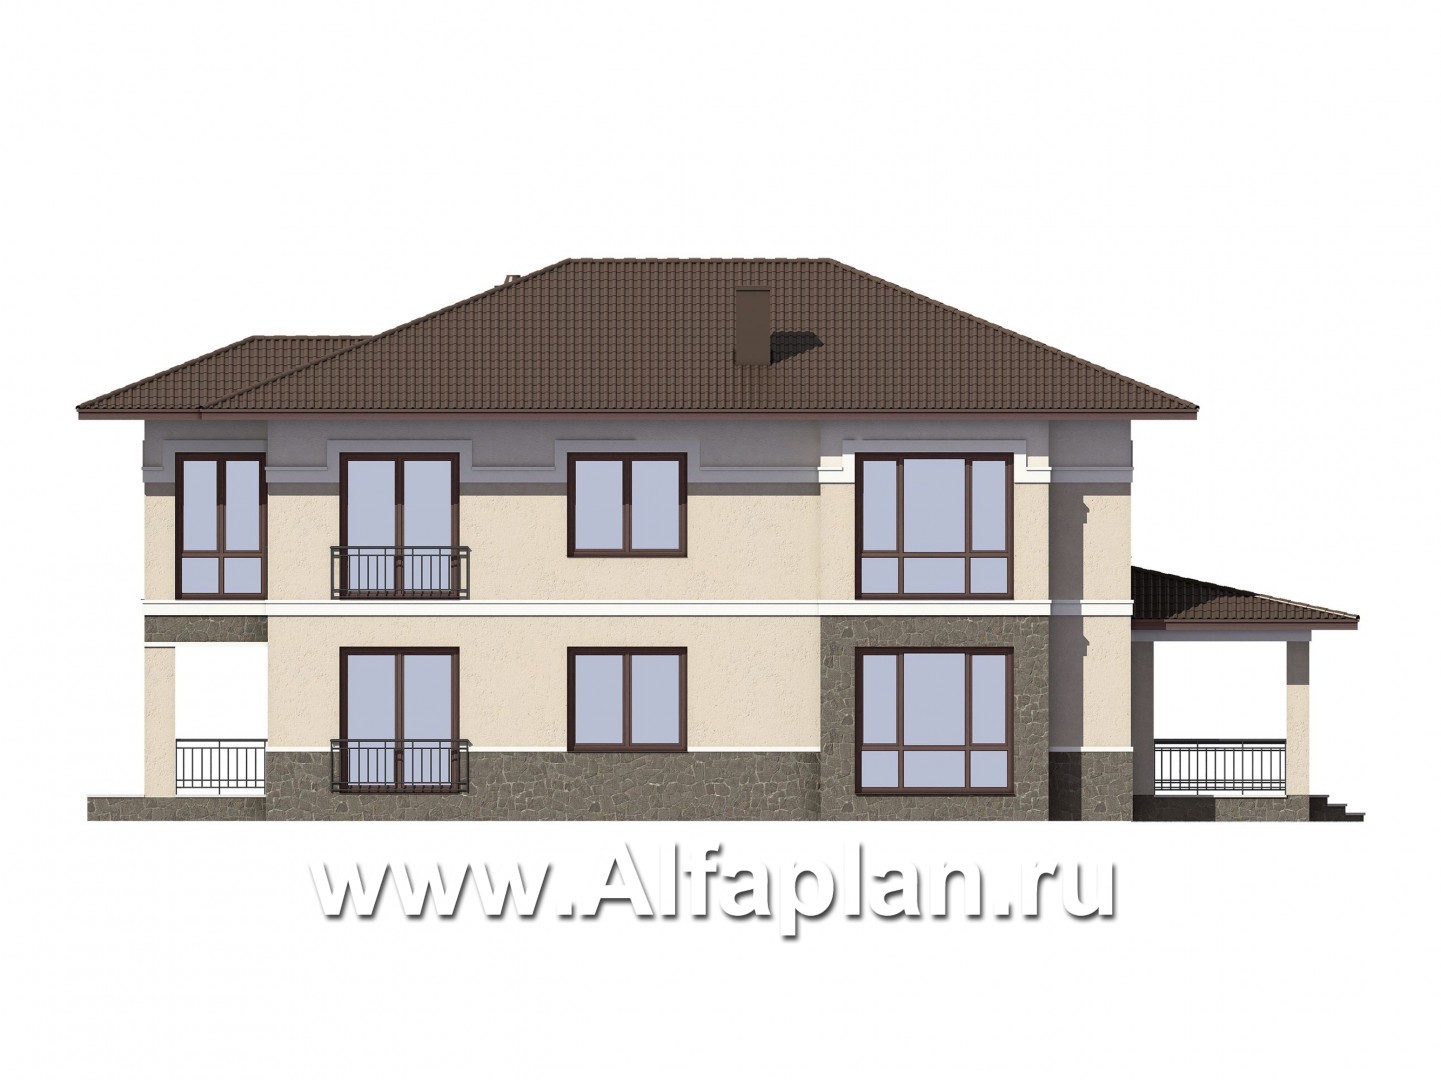 Проект двухэтажного дома из газобетона, планировка с гостевой и спальней на 1 эт, с террасой, в современном стиле - фасад дома